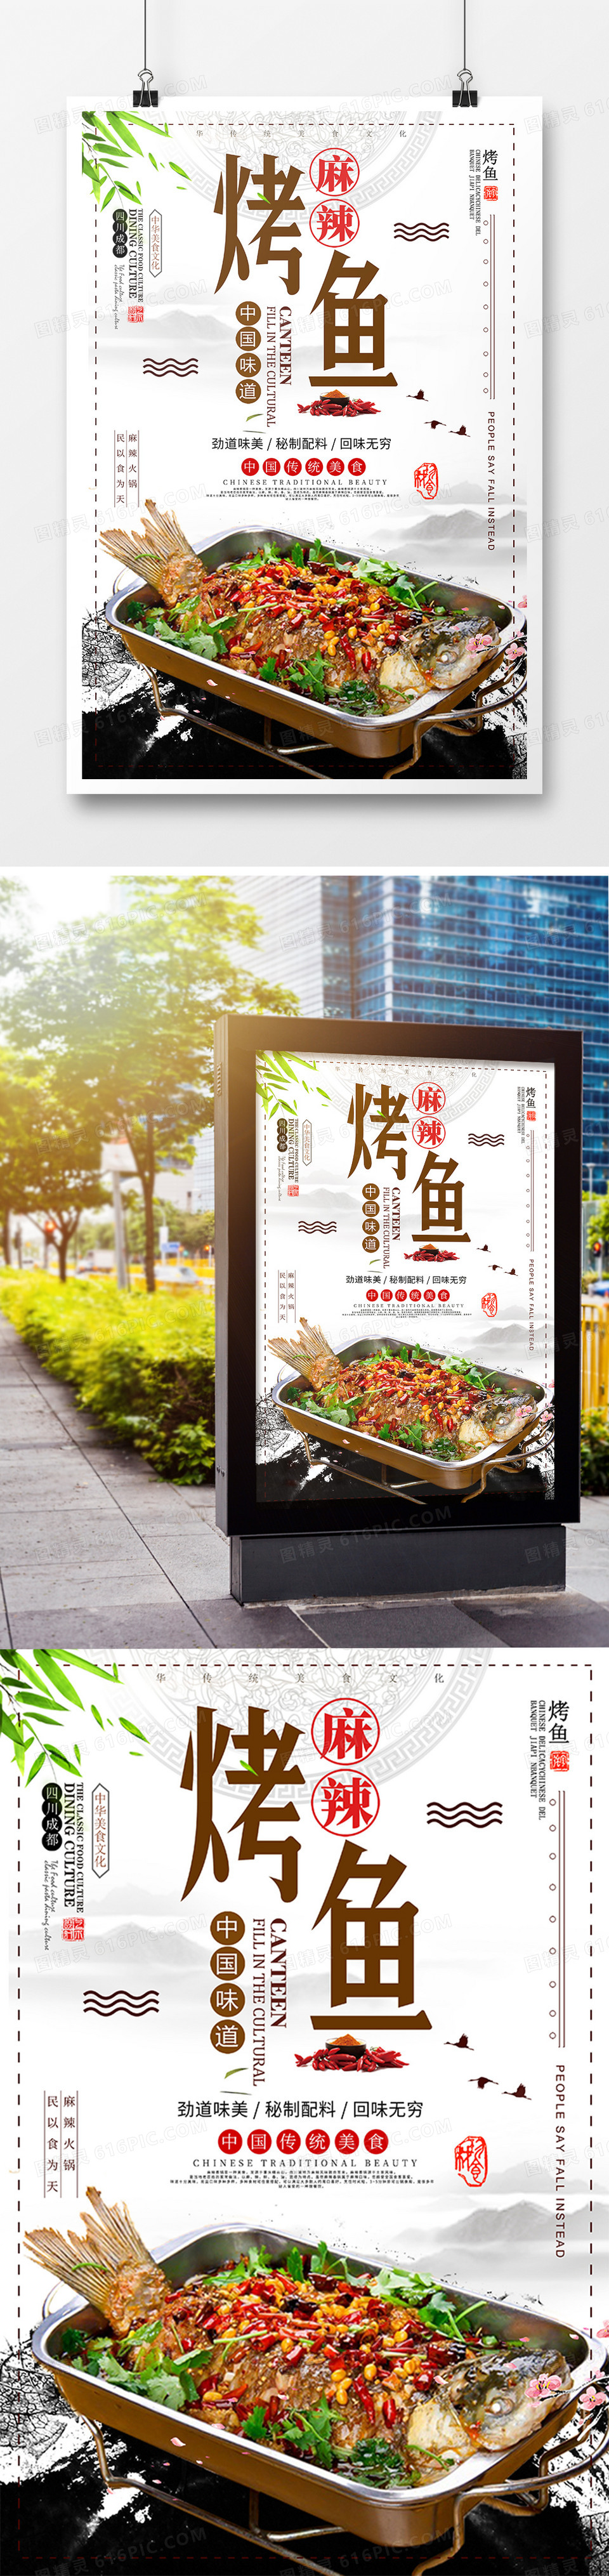 中国风创意美食烤鱼海报设计